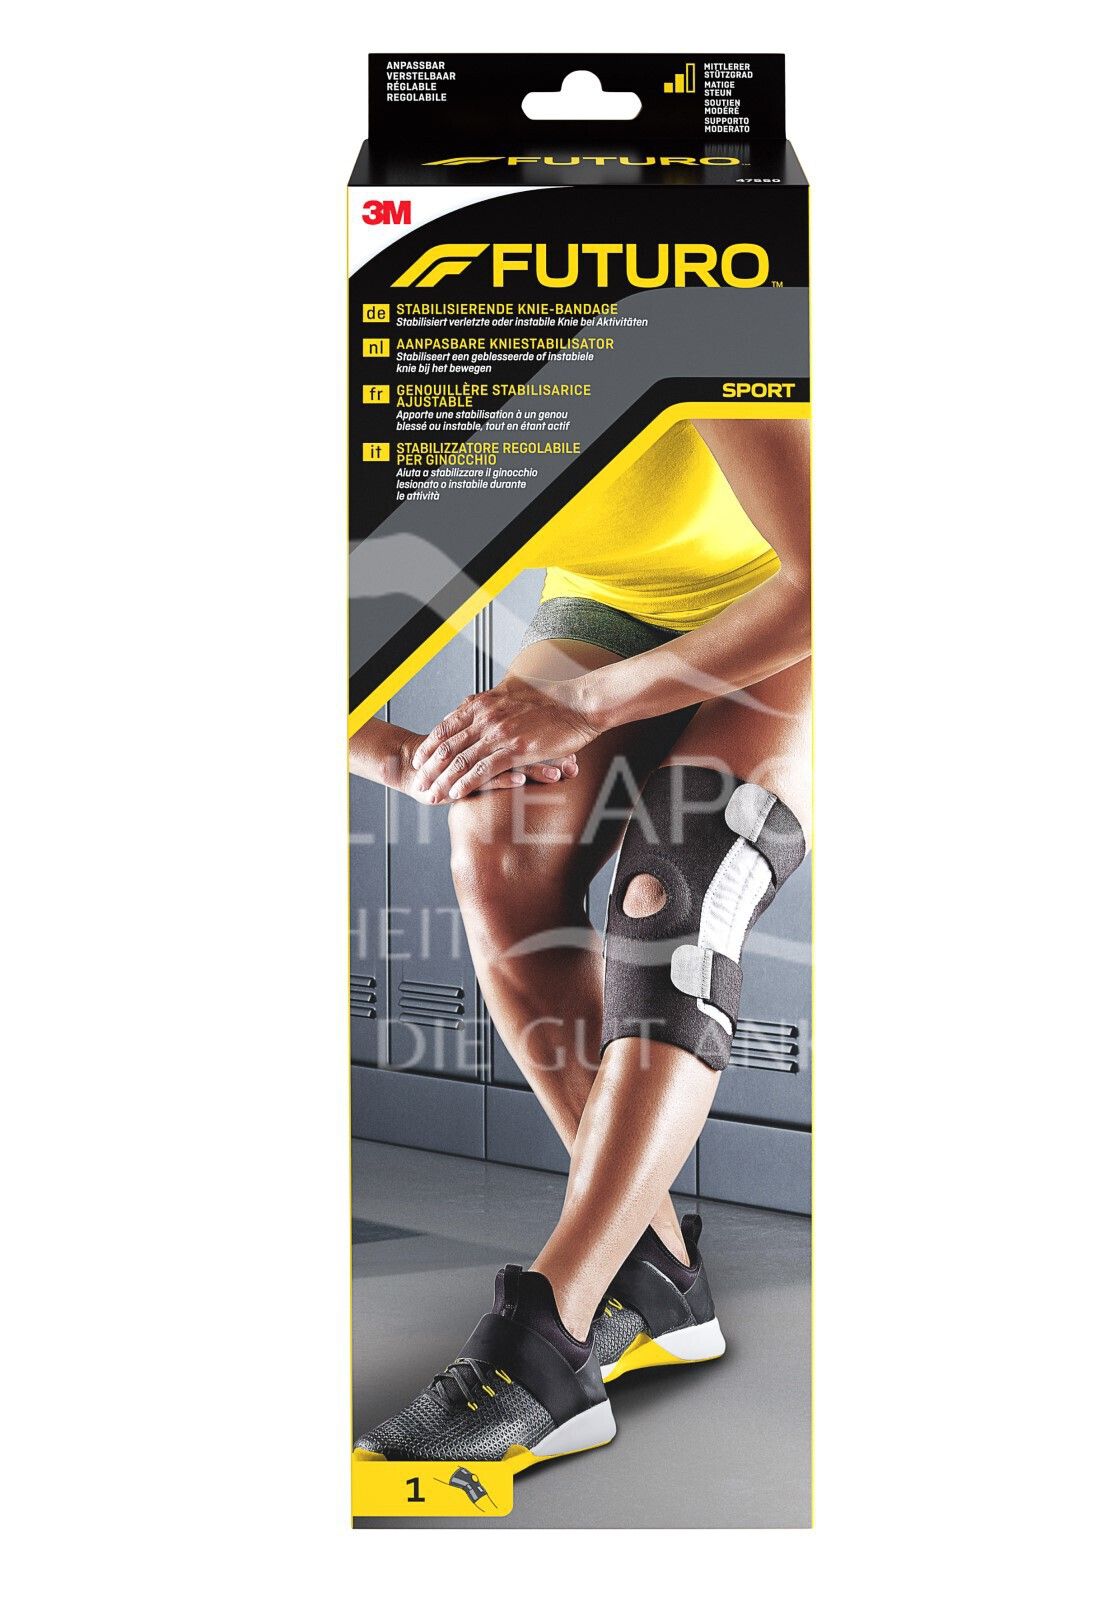 FUTURO™ Stabilisierende Knie-Bandage 47550, Verstellbar SPORT